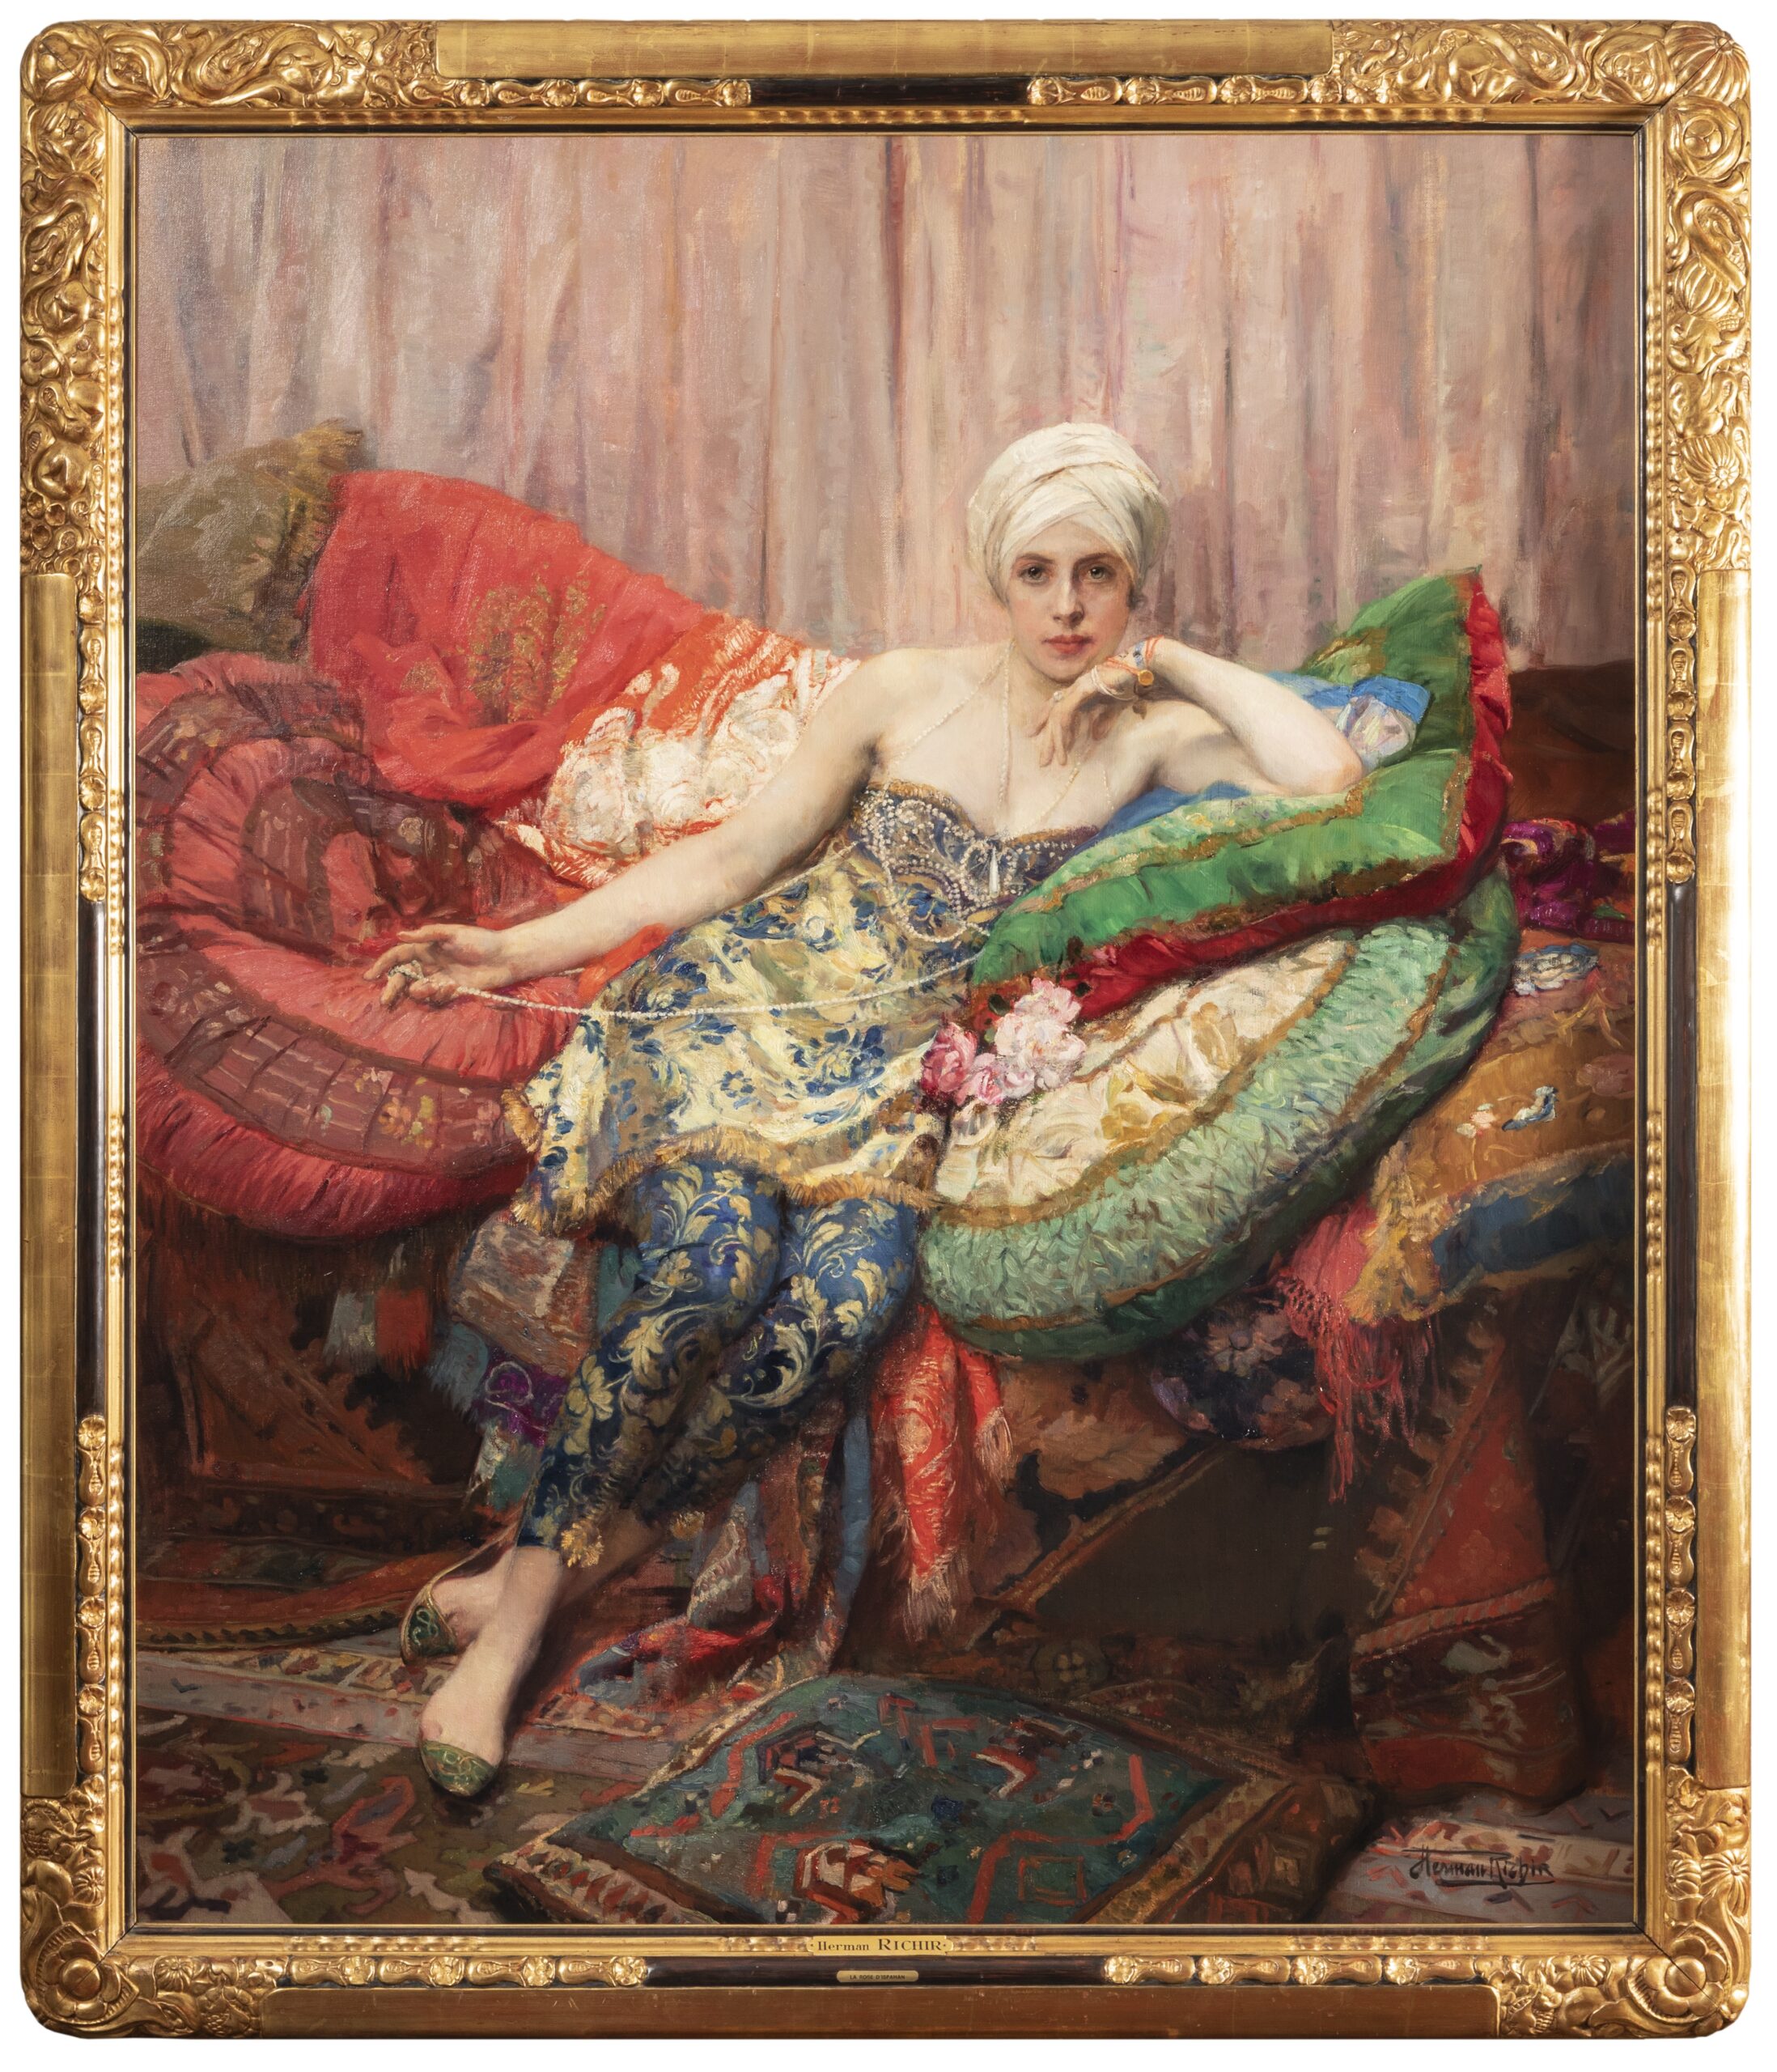 Herman Jean Joseph Richir, Rose d'Ispahan, c. 1925, Salon de la Société Nationale des Beaux-Arts (1926), huile sur toile, 185 x 58 cm, coll. part., © Inu studio